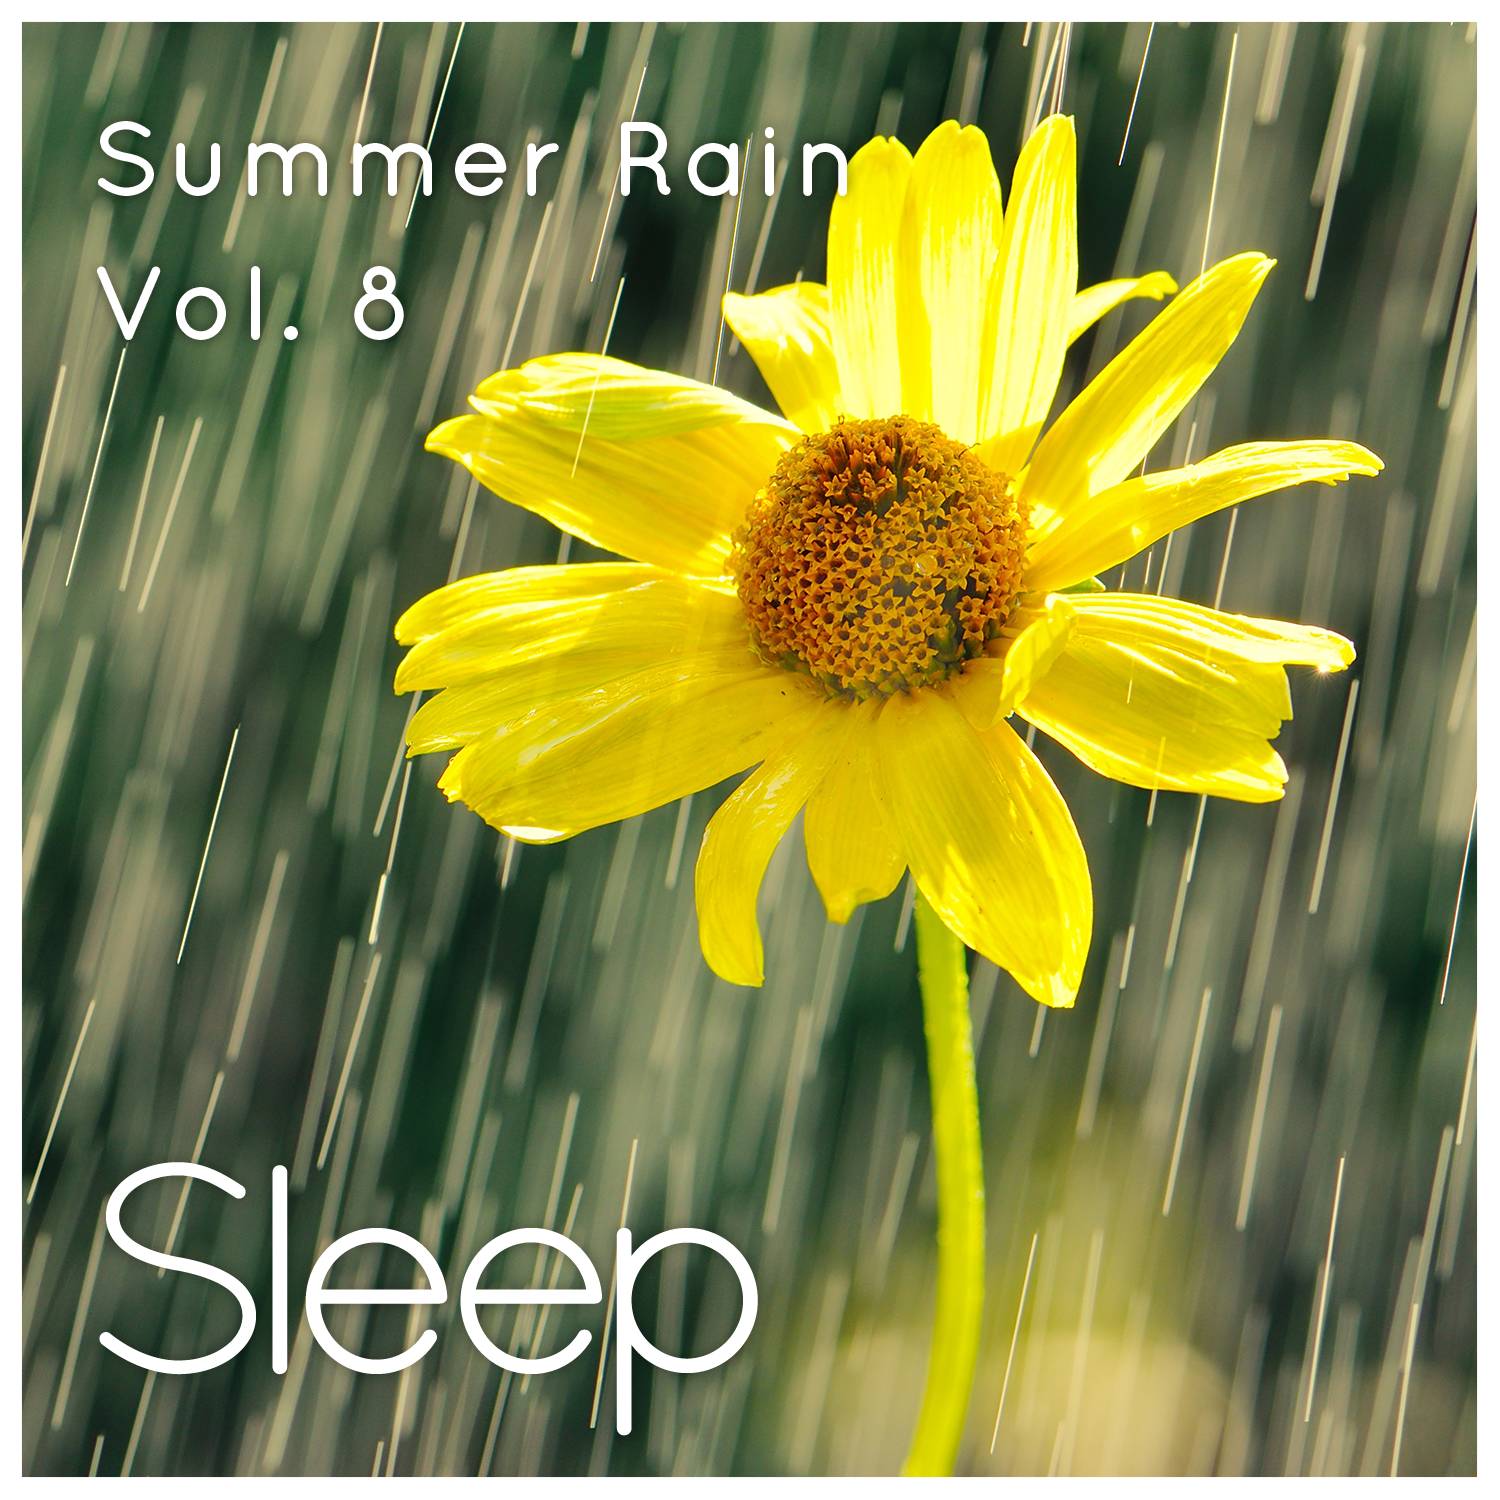 Sleep to Summer Rain, Vol. 8